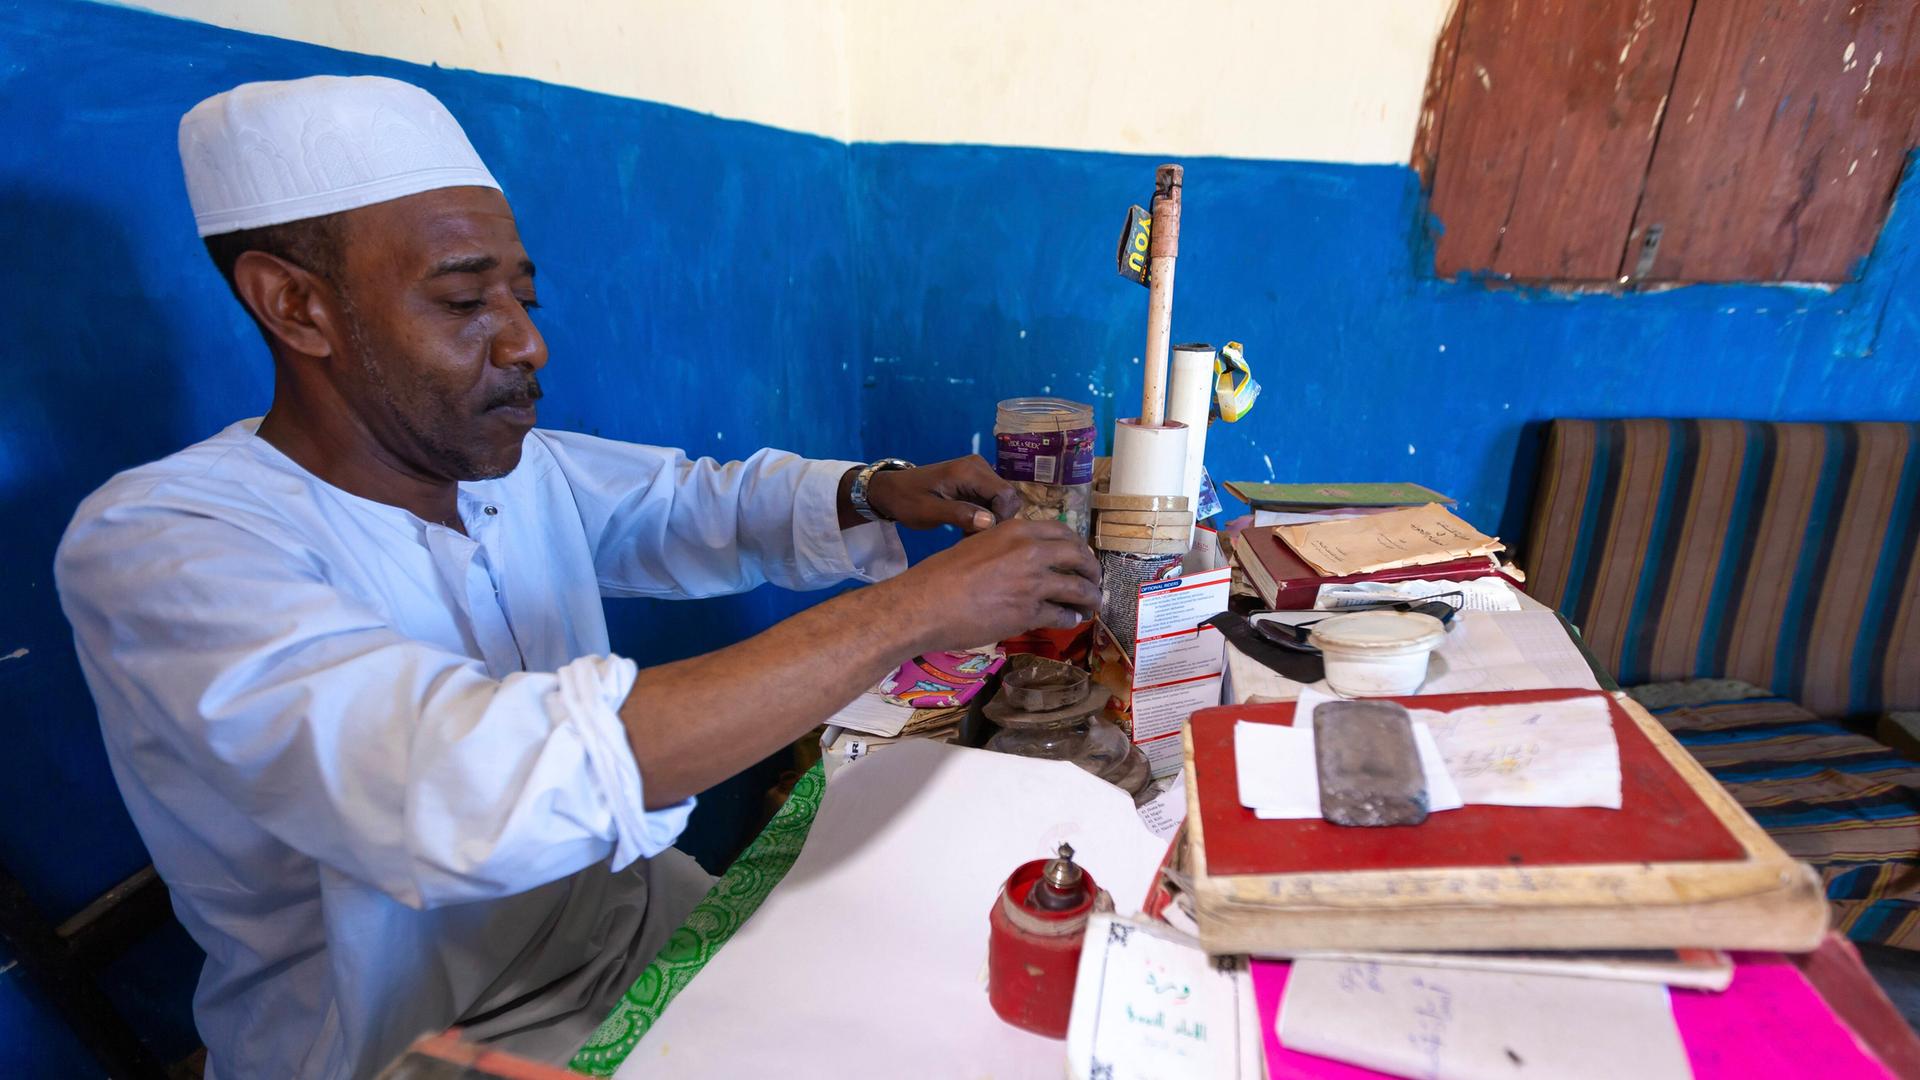 Ein traditioneller kenianischer Heiler bereitet in seinem Haus ein Mittel zu.